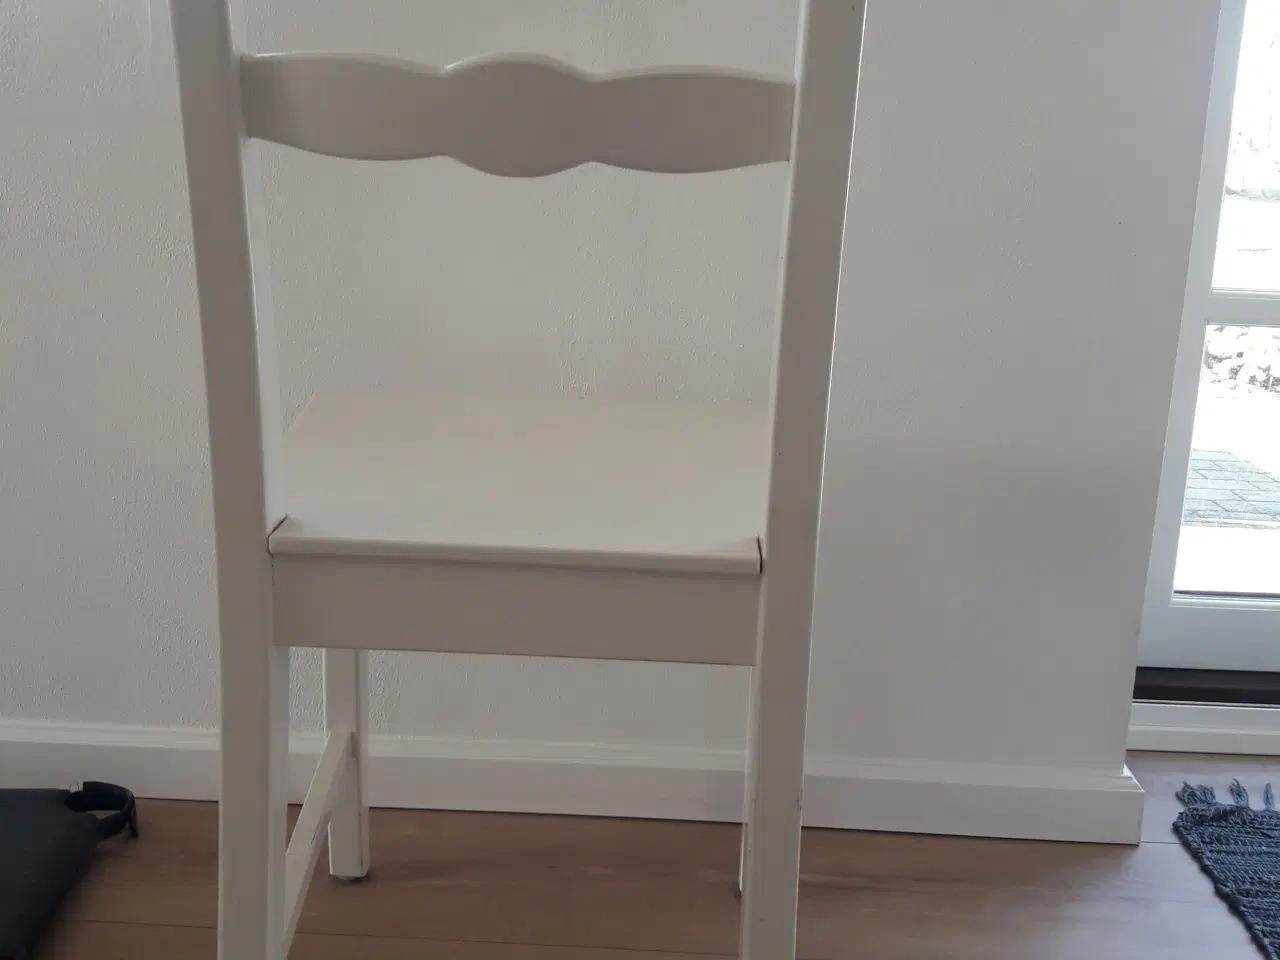 Billede 2 - Ikea Lanni stol købes